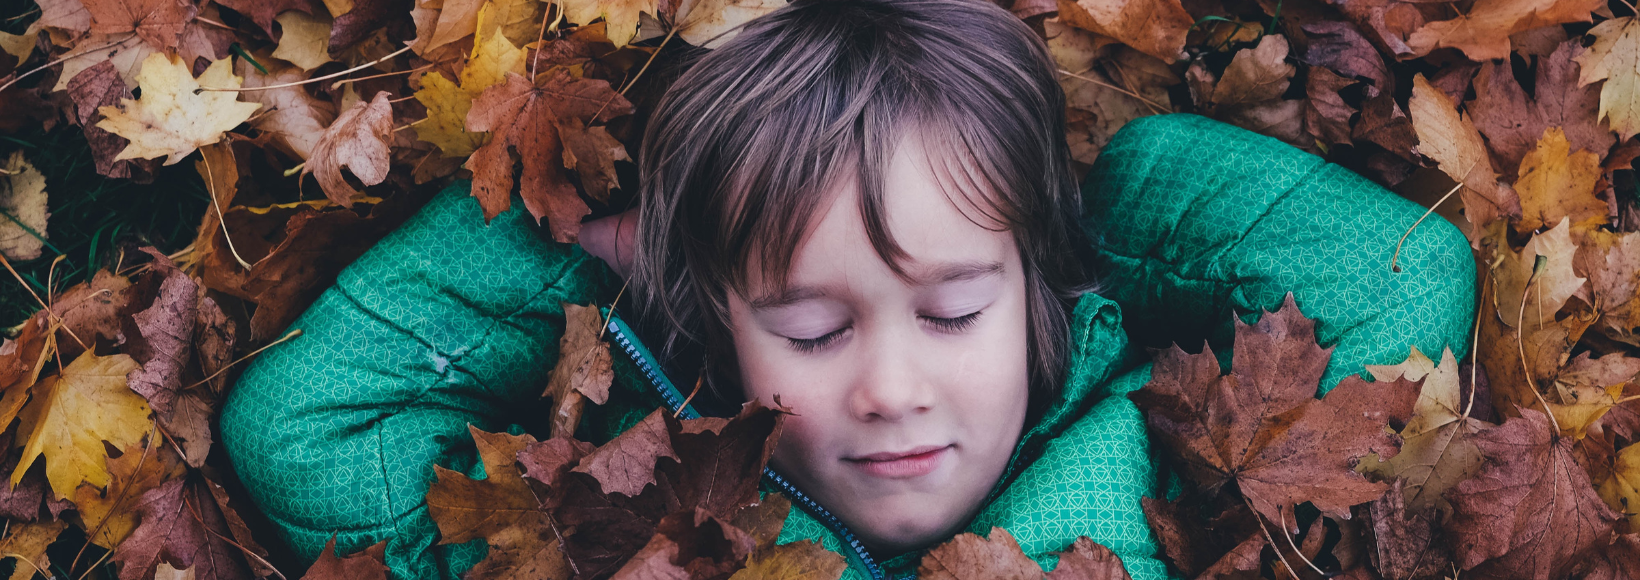 5 ways to help children sleep better